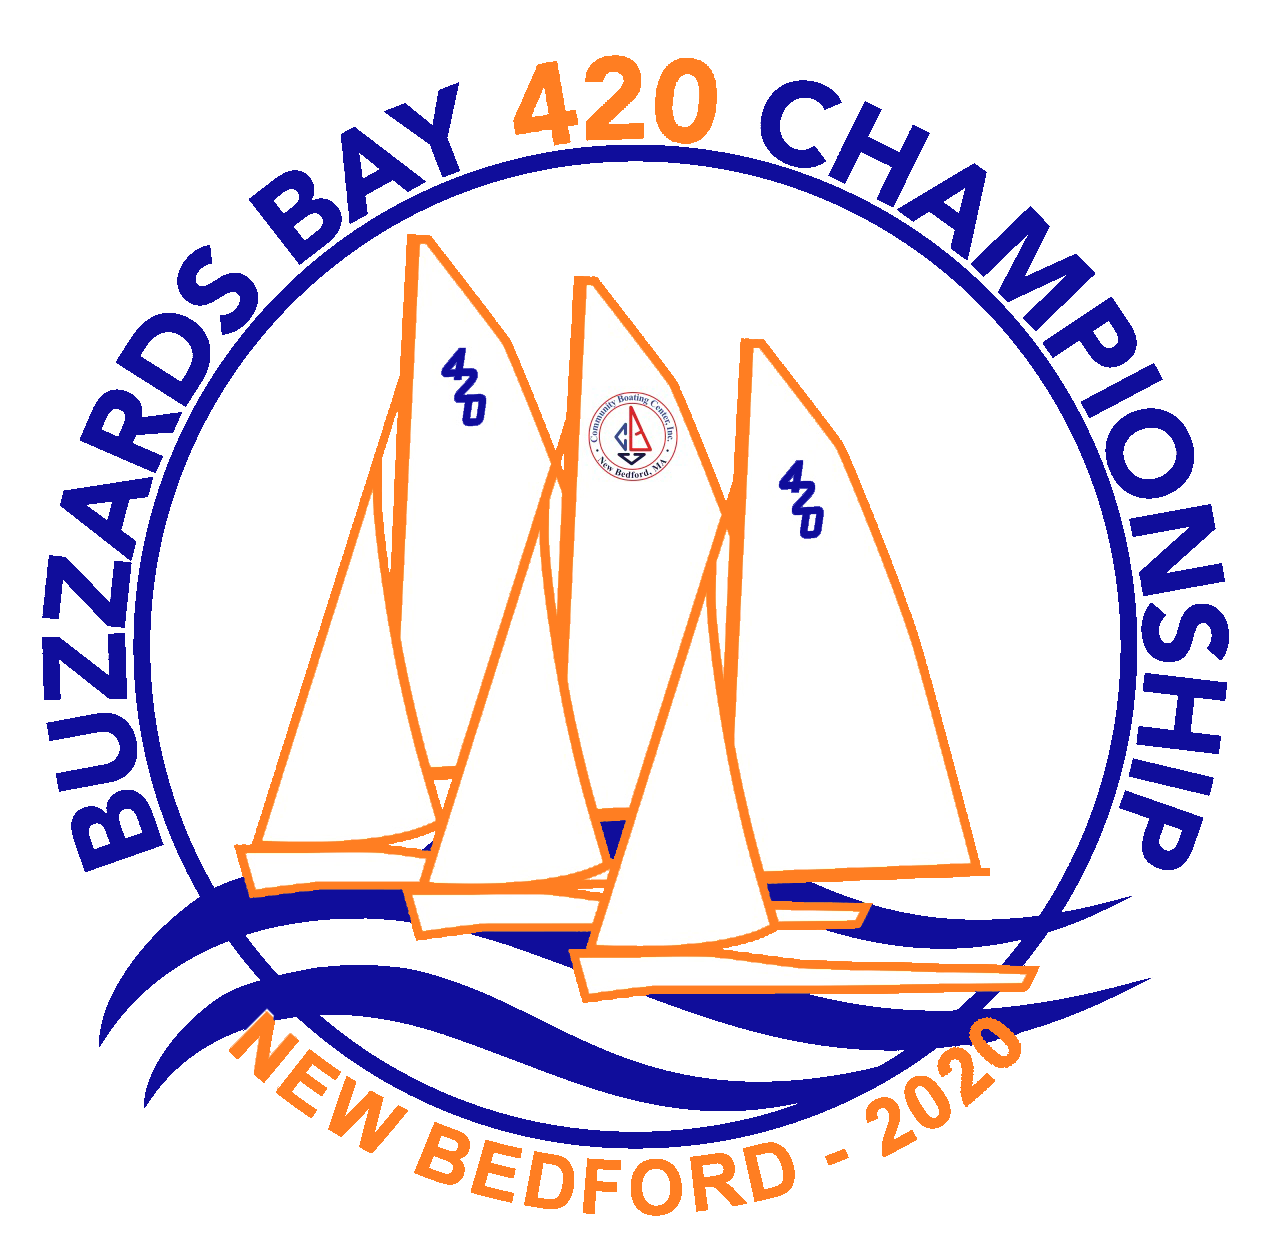 Buzzards Bay 420 champs logo 2020